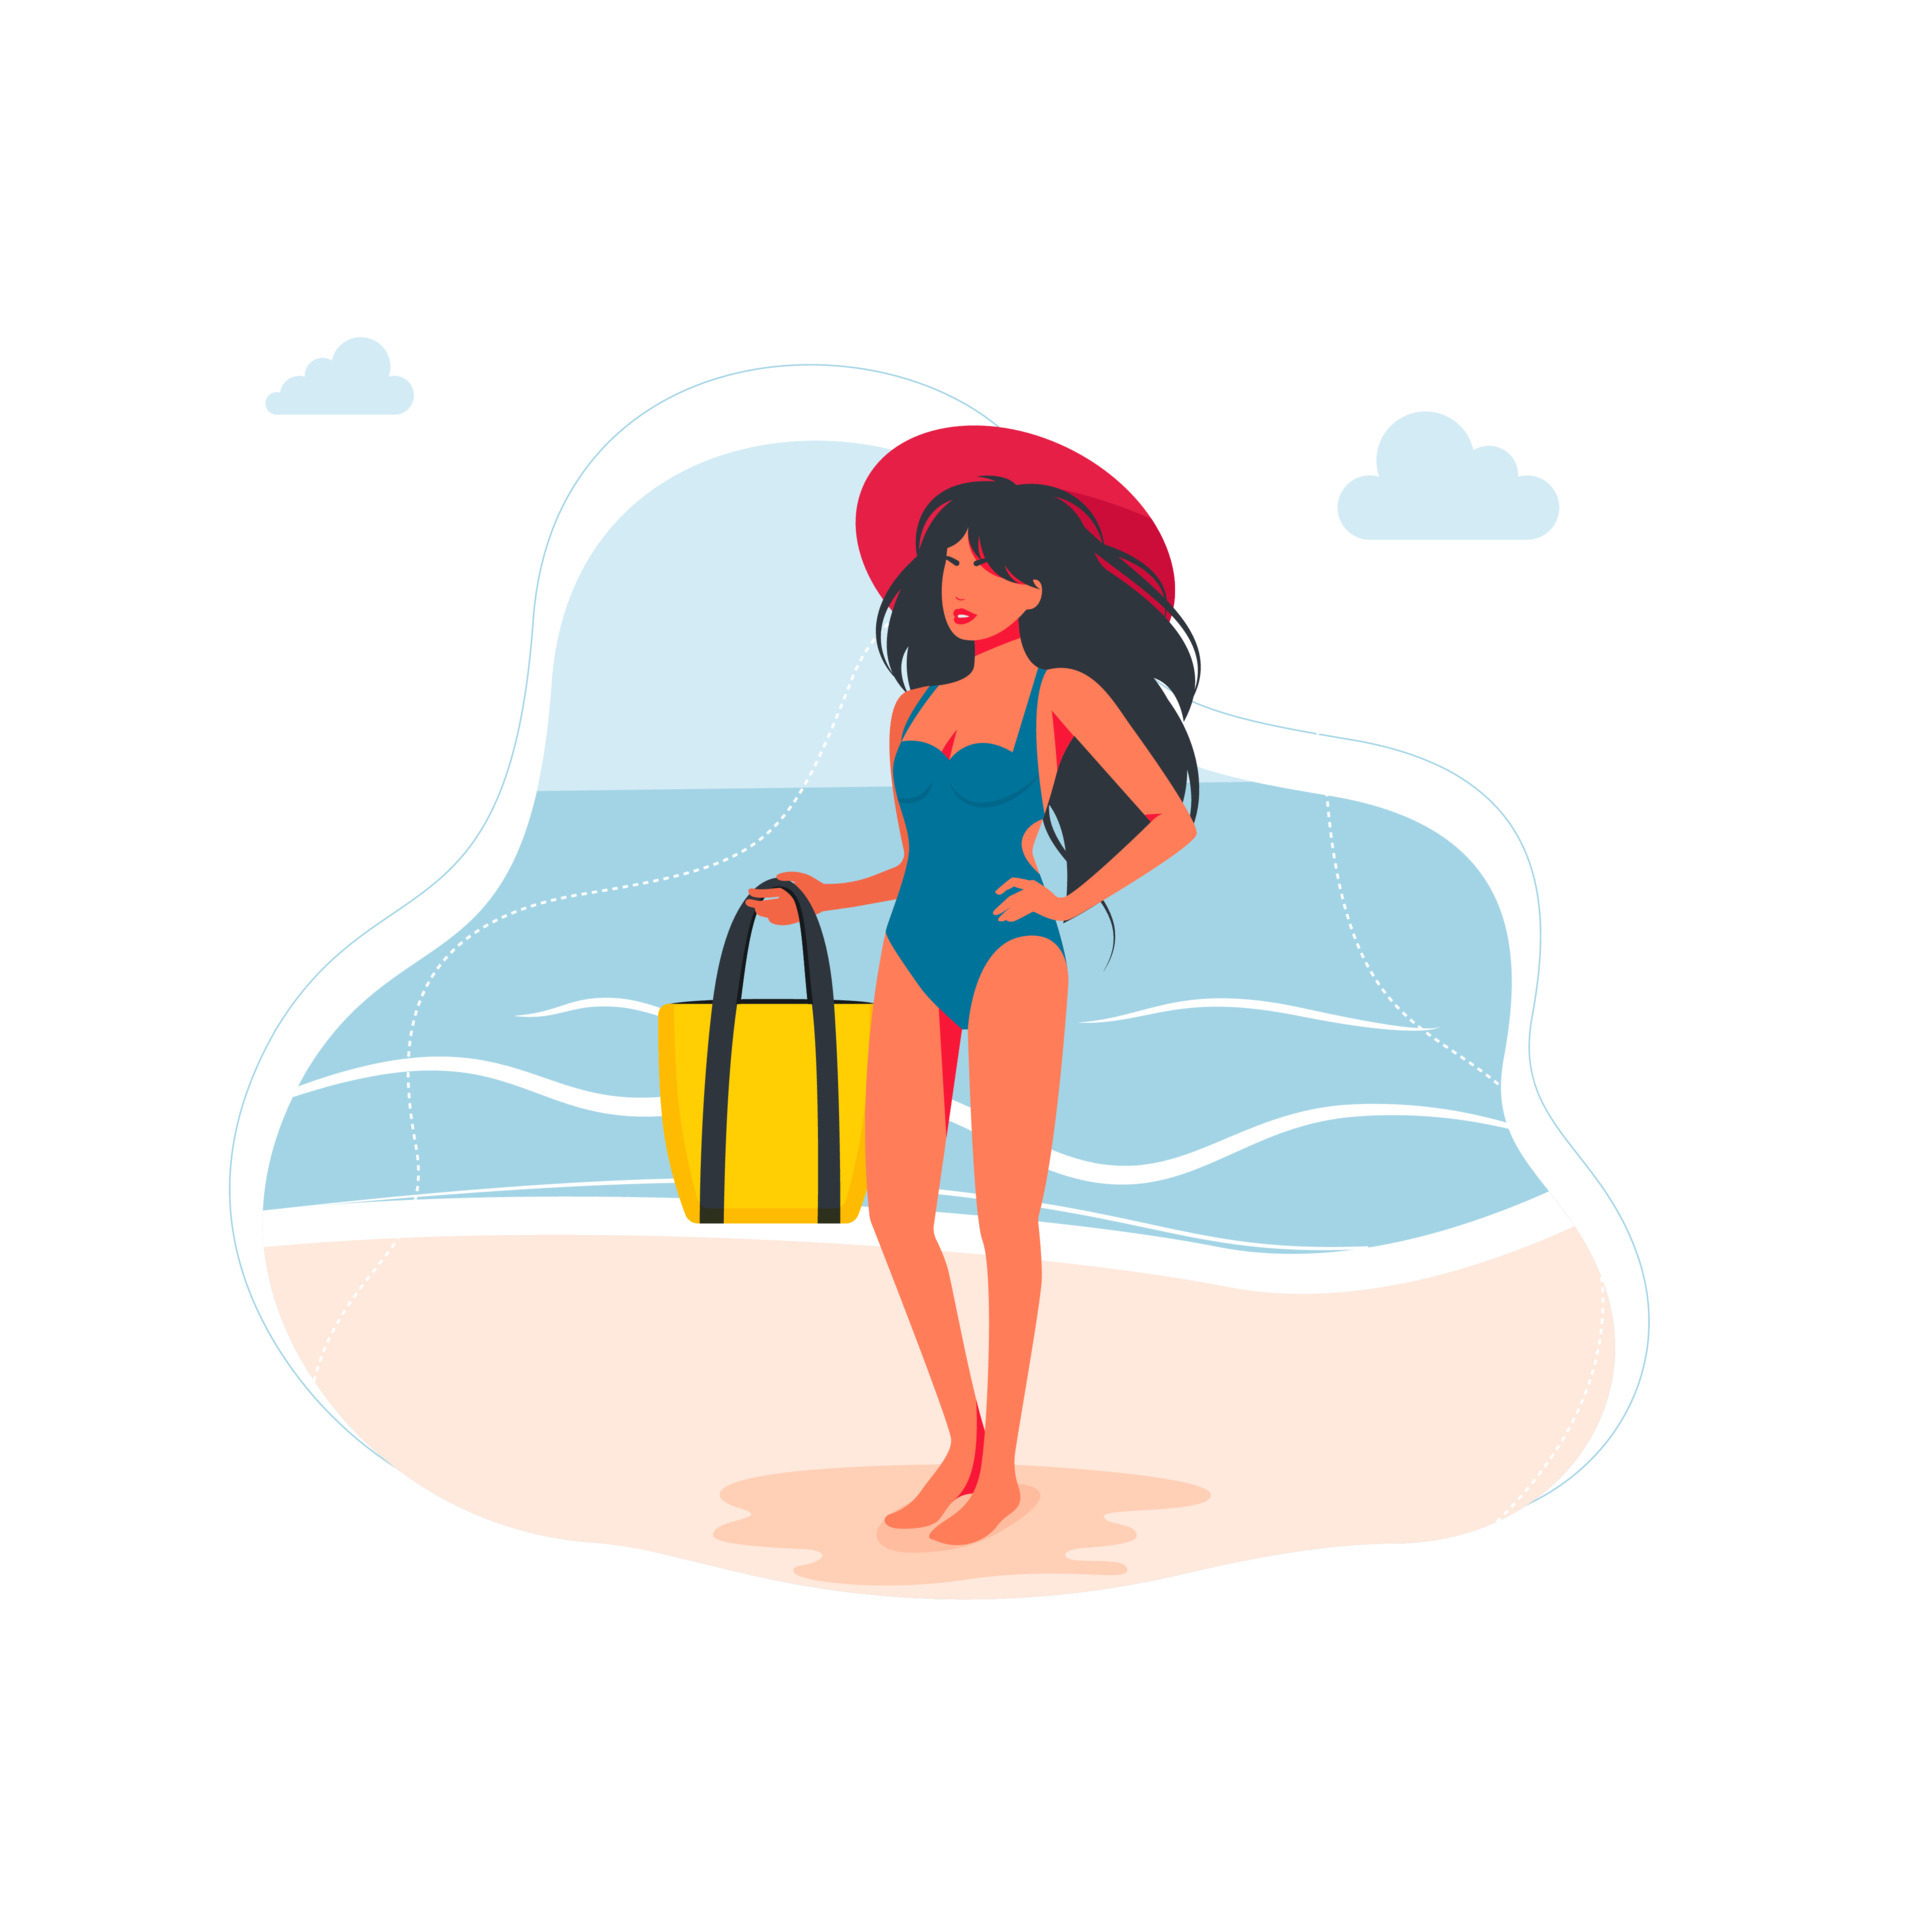 Ik heb een Engelse les Telegraaf rechtop slanke vrouw gekleed in zwembroek met grote hoed op haar hoofd staat op het  strand, houdt een tas in zijn hand. zomervakantie concept. vrouwelijk  personage met zwemkleding, grote witte hoeden. vector 4492747